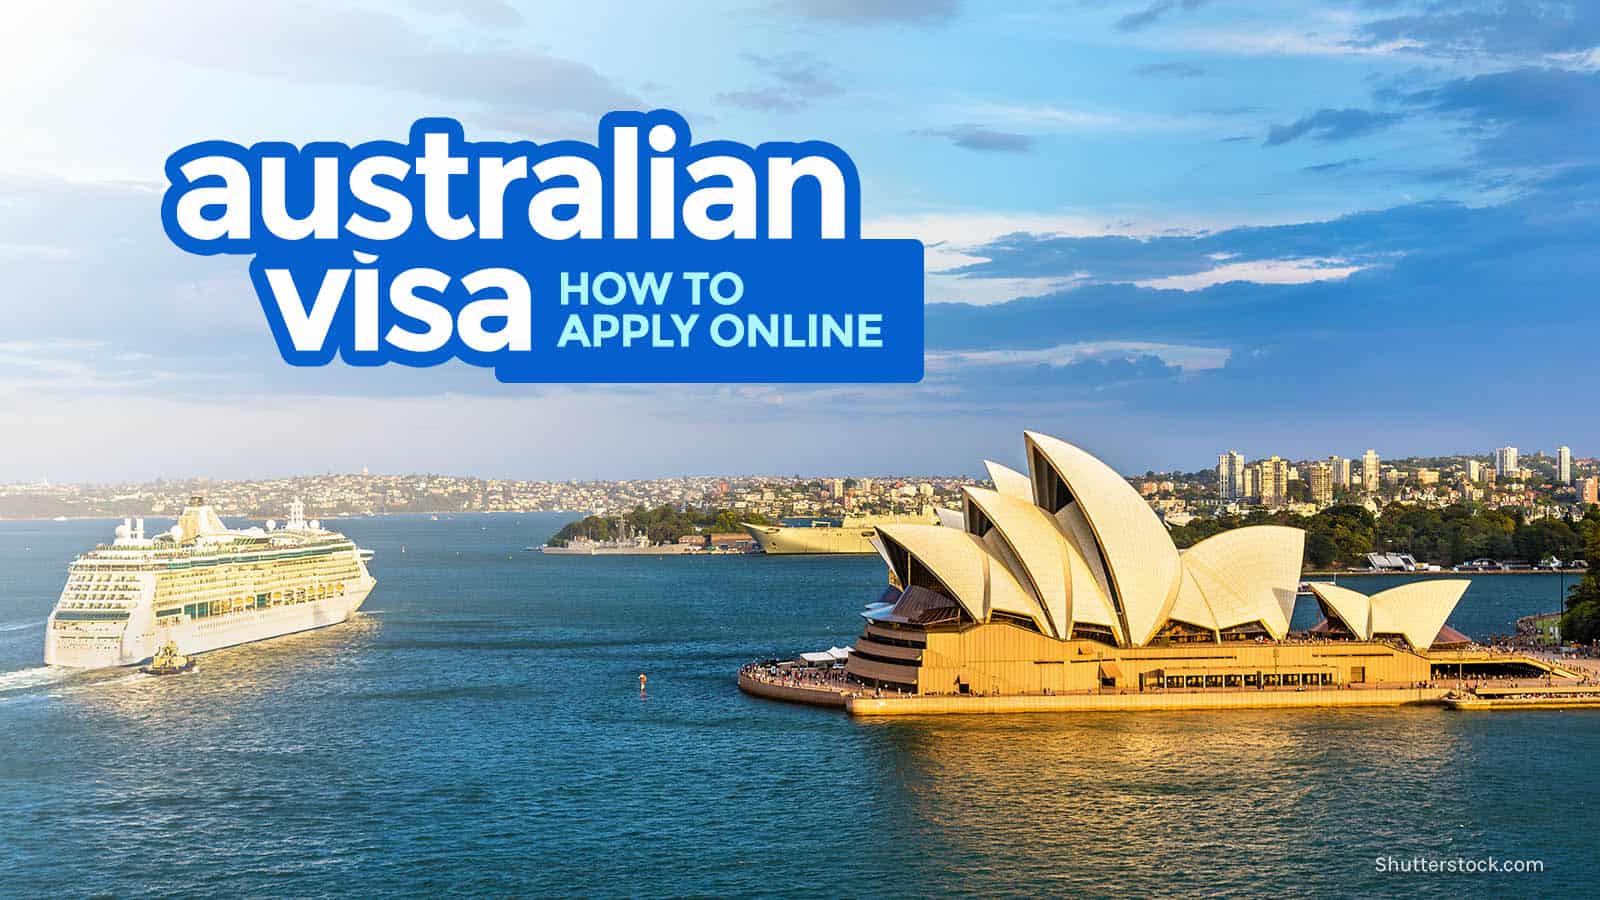 Australian Visa Requirements Online Application 2019 The Poor - australian visa requirements online application 2019